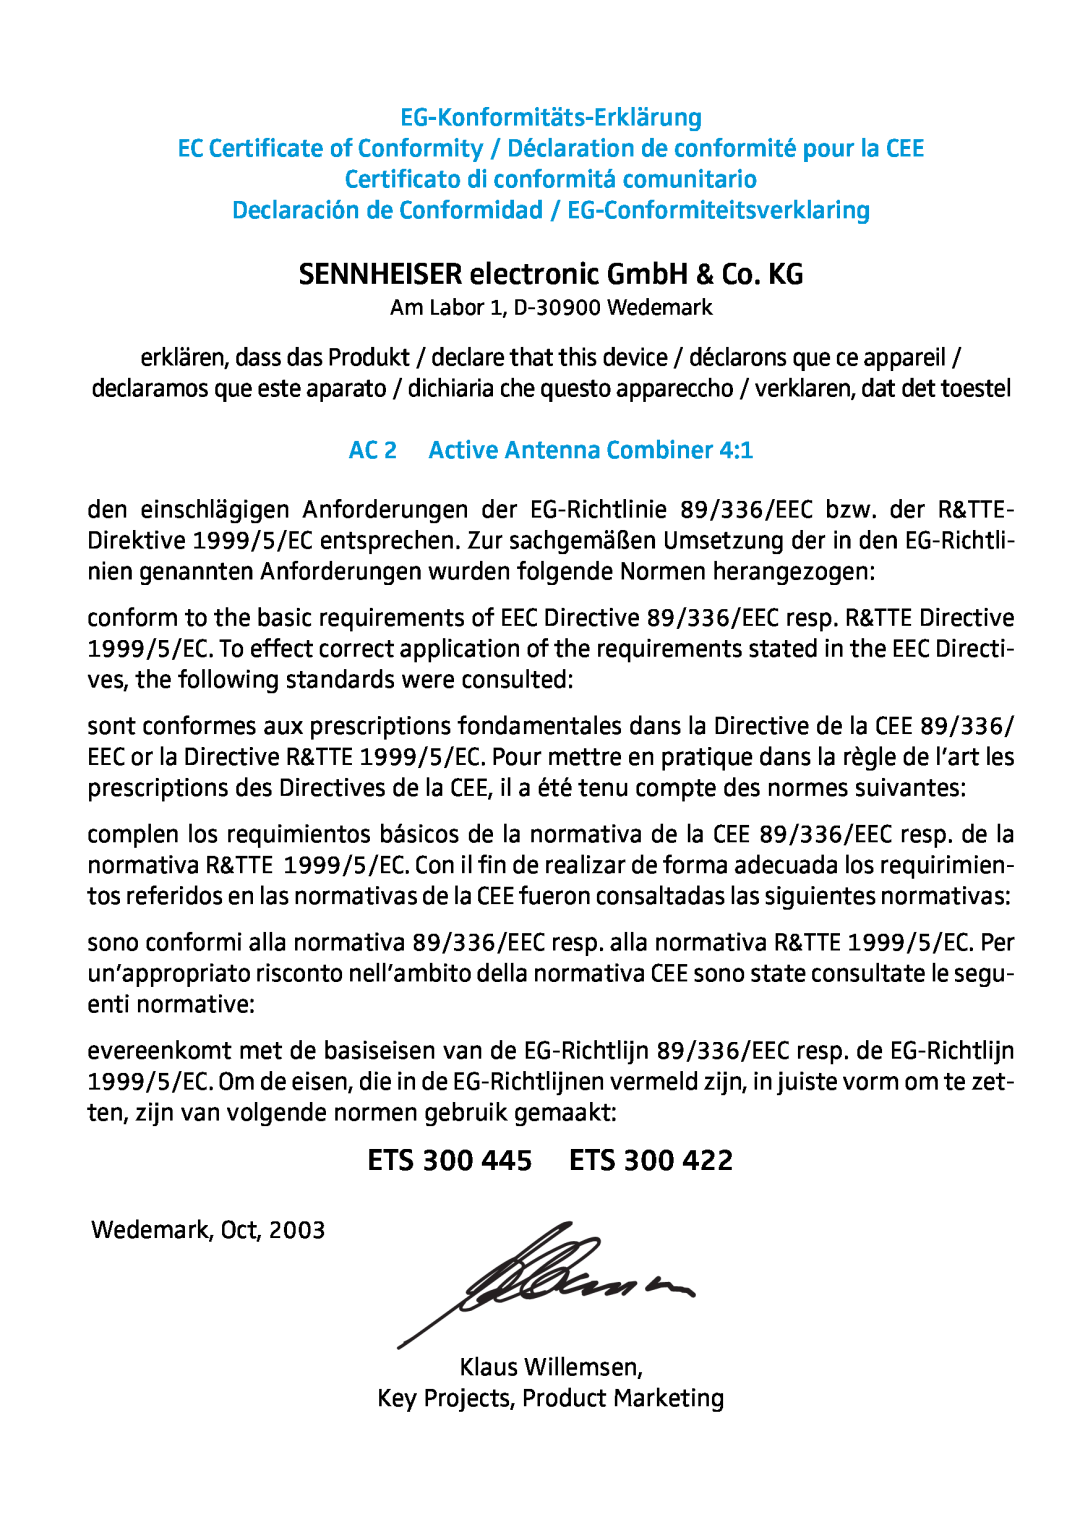 Sennheiser AC2 manual SENNHEISER electronic GmbH & Co. KG, ETS 300 445 ETS, EG-Konformitäts-Erklärung 